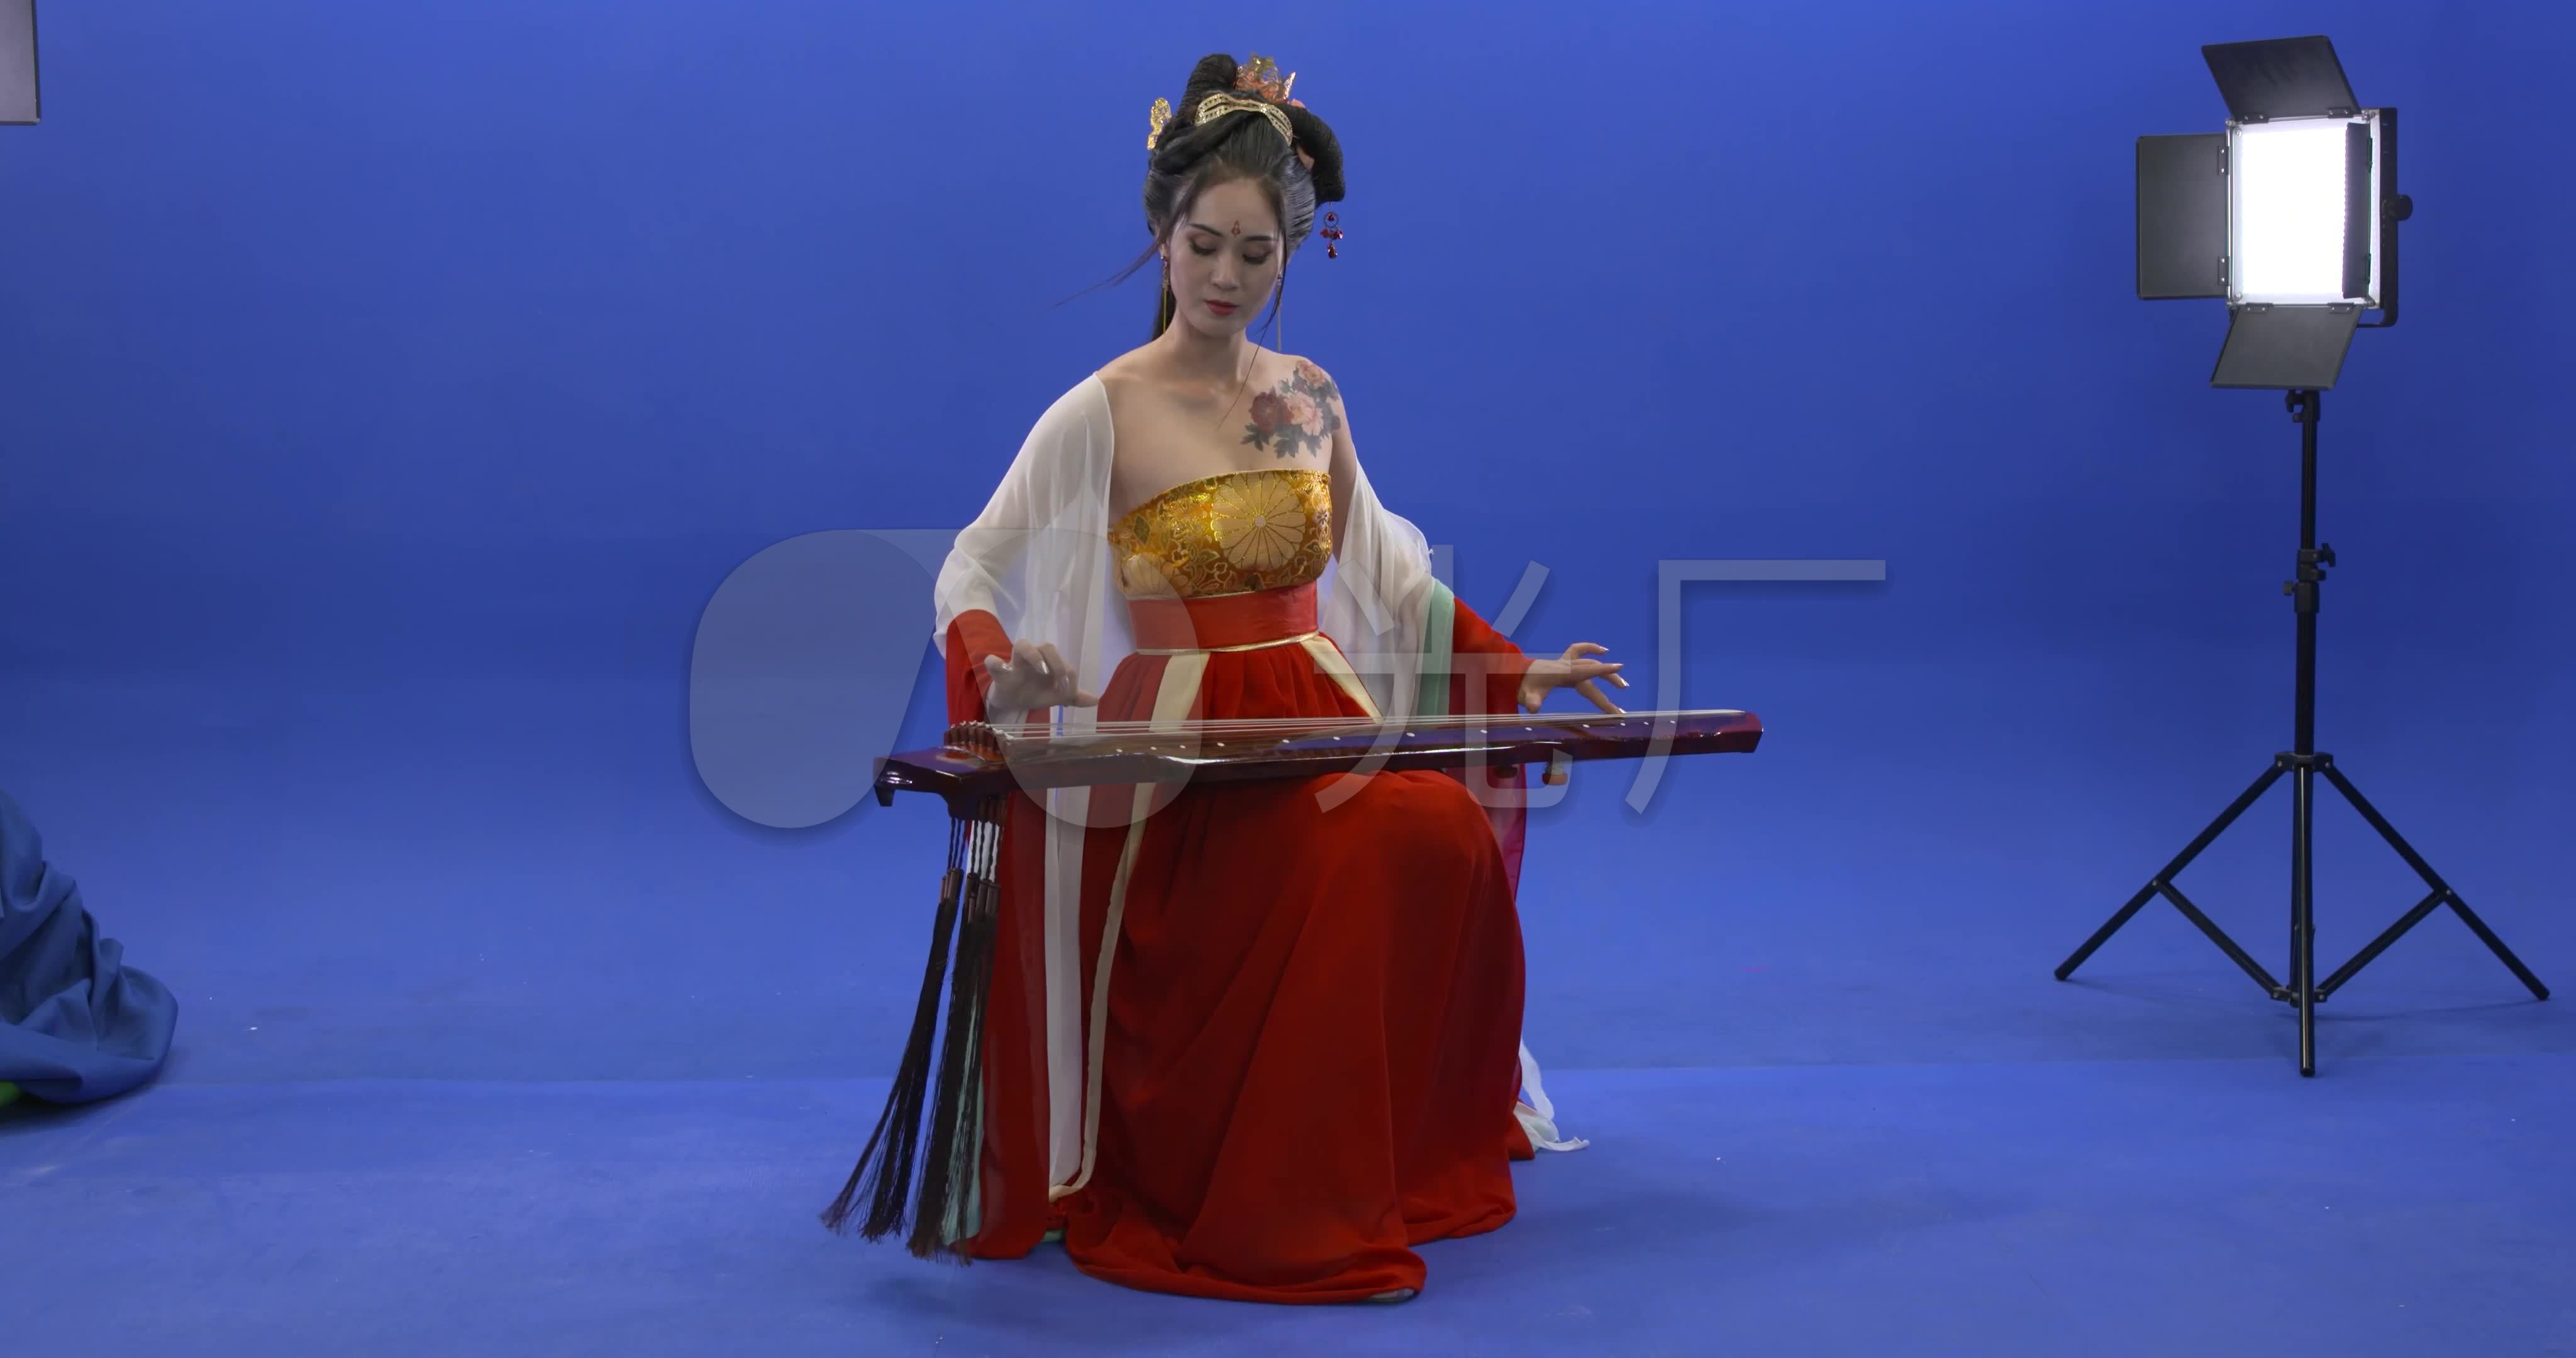 古装美女弹奏古典乐器-蓝牛仔影像-中国原创广告影像素材